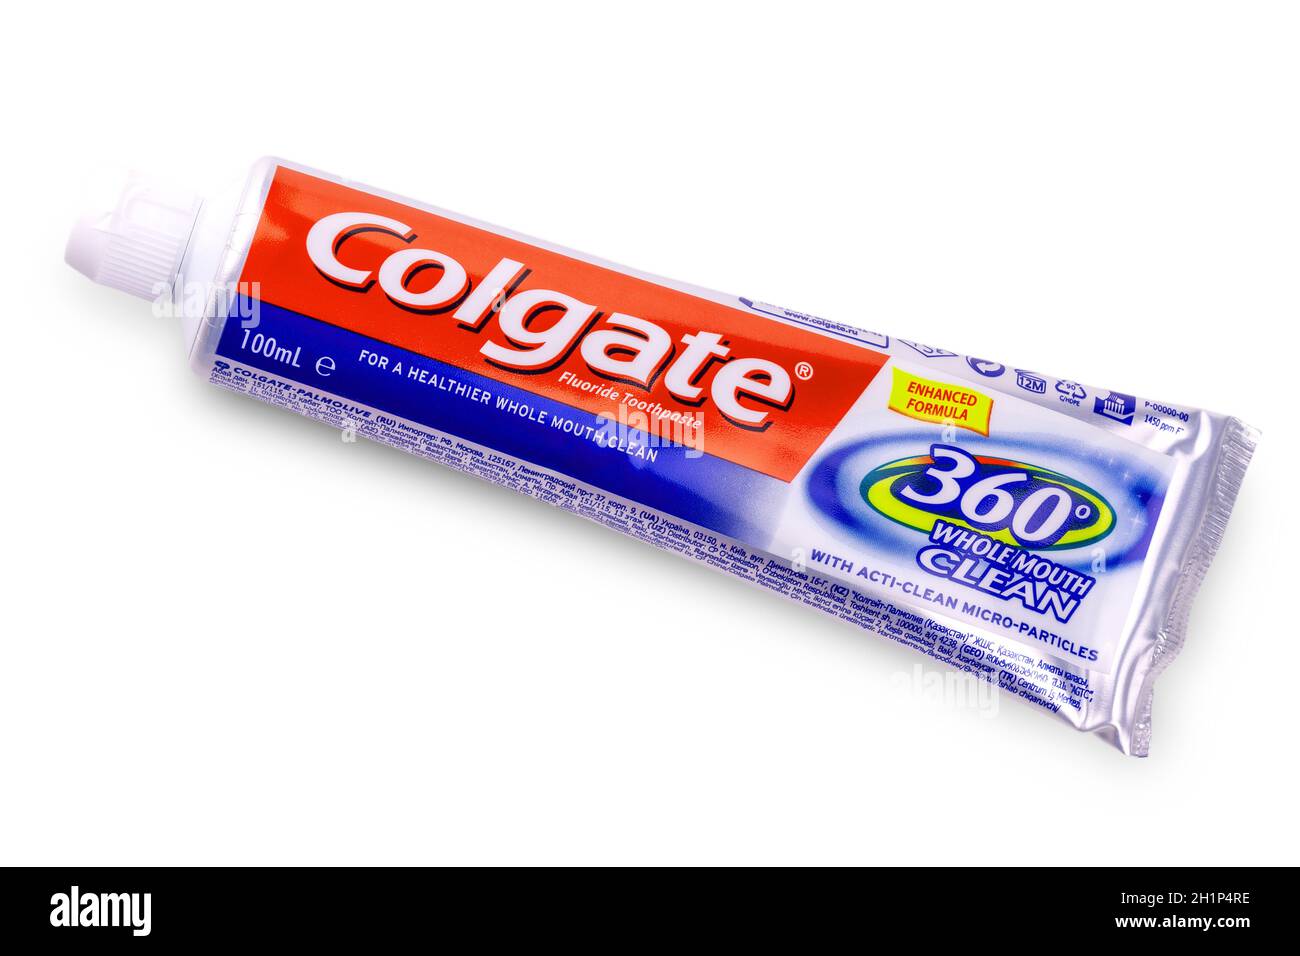 La Kamchatka, Russia - 13 Maggio 2019 : Colgate pasta dentifricia su bianco.Colgate è una marca di dentifricio prodotta da Colgate-Palmolive Foto Stock